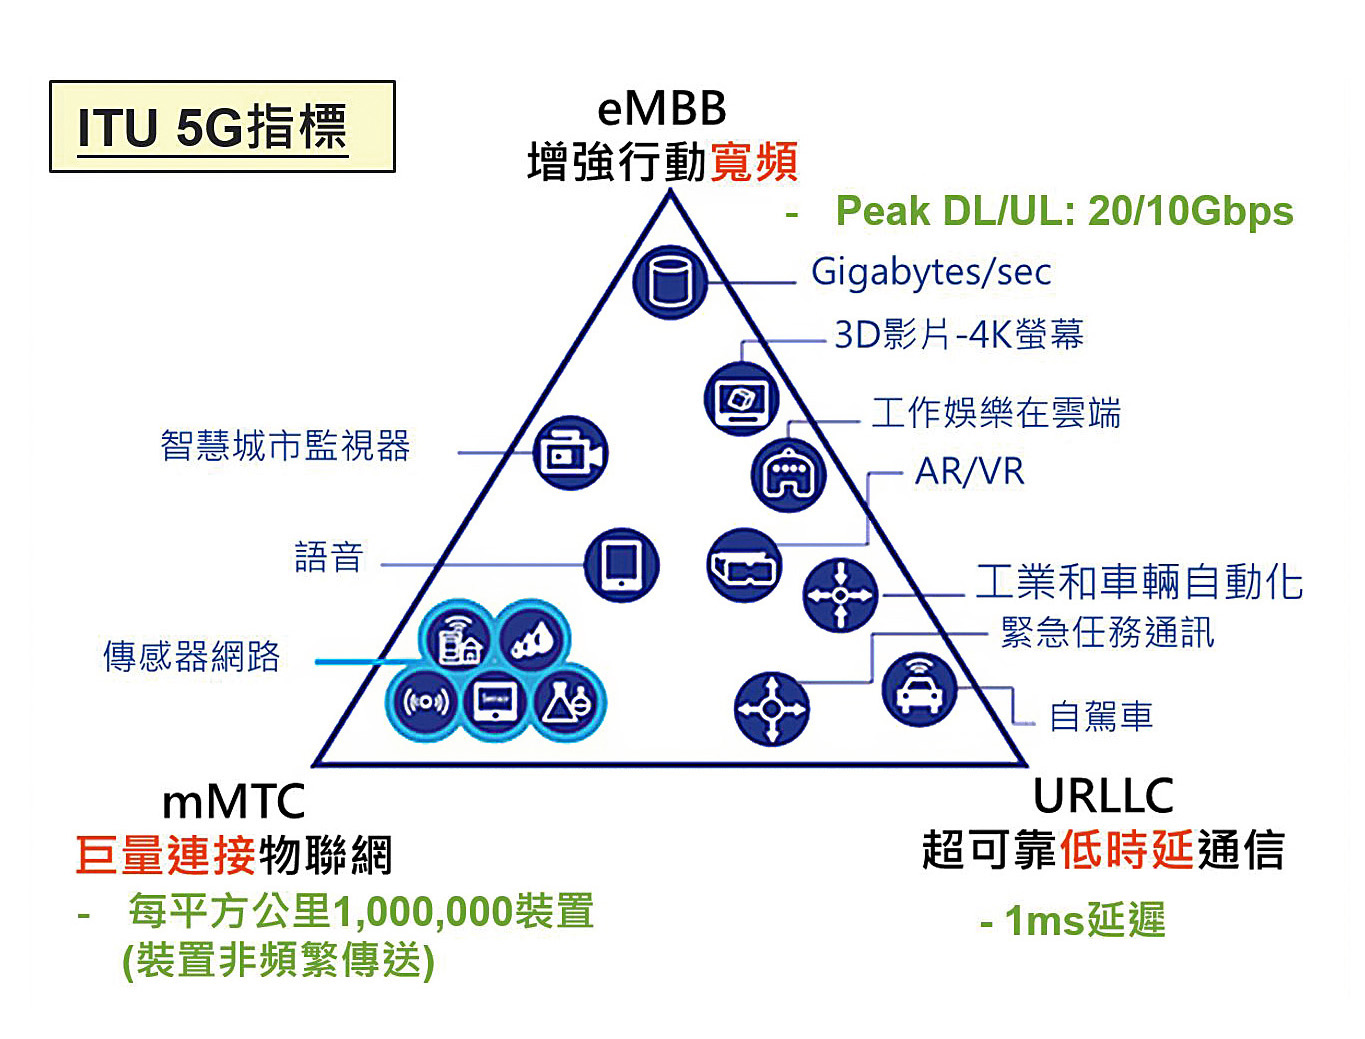 ITU定義5G服務需求：增強行動寬頻、巨量連接物聯網、超可靠低時延通信